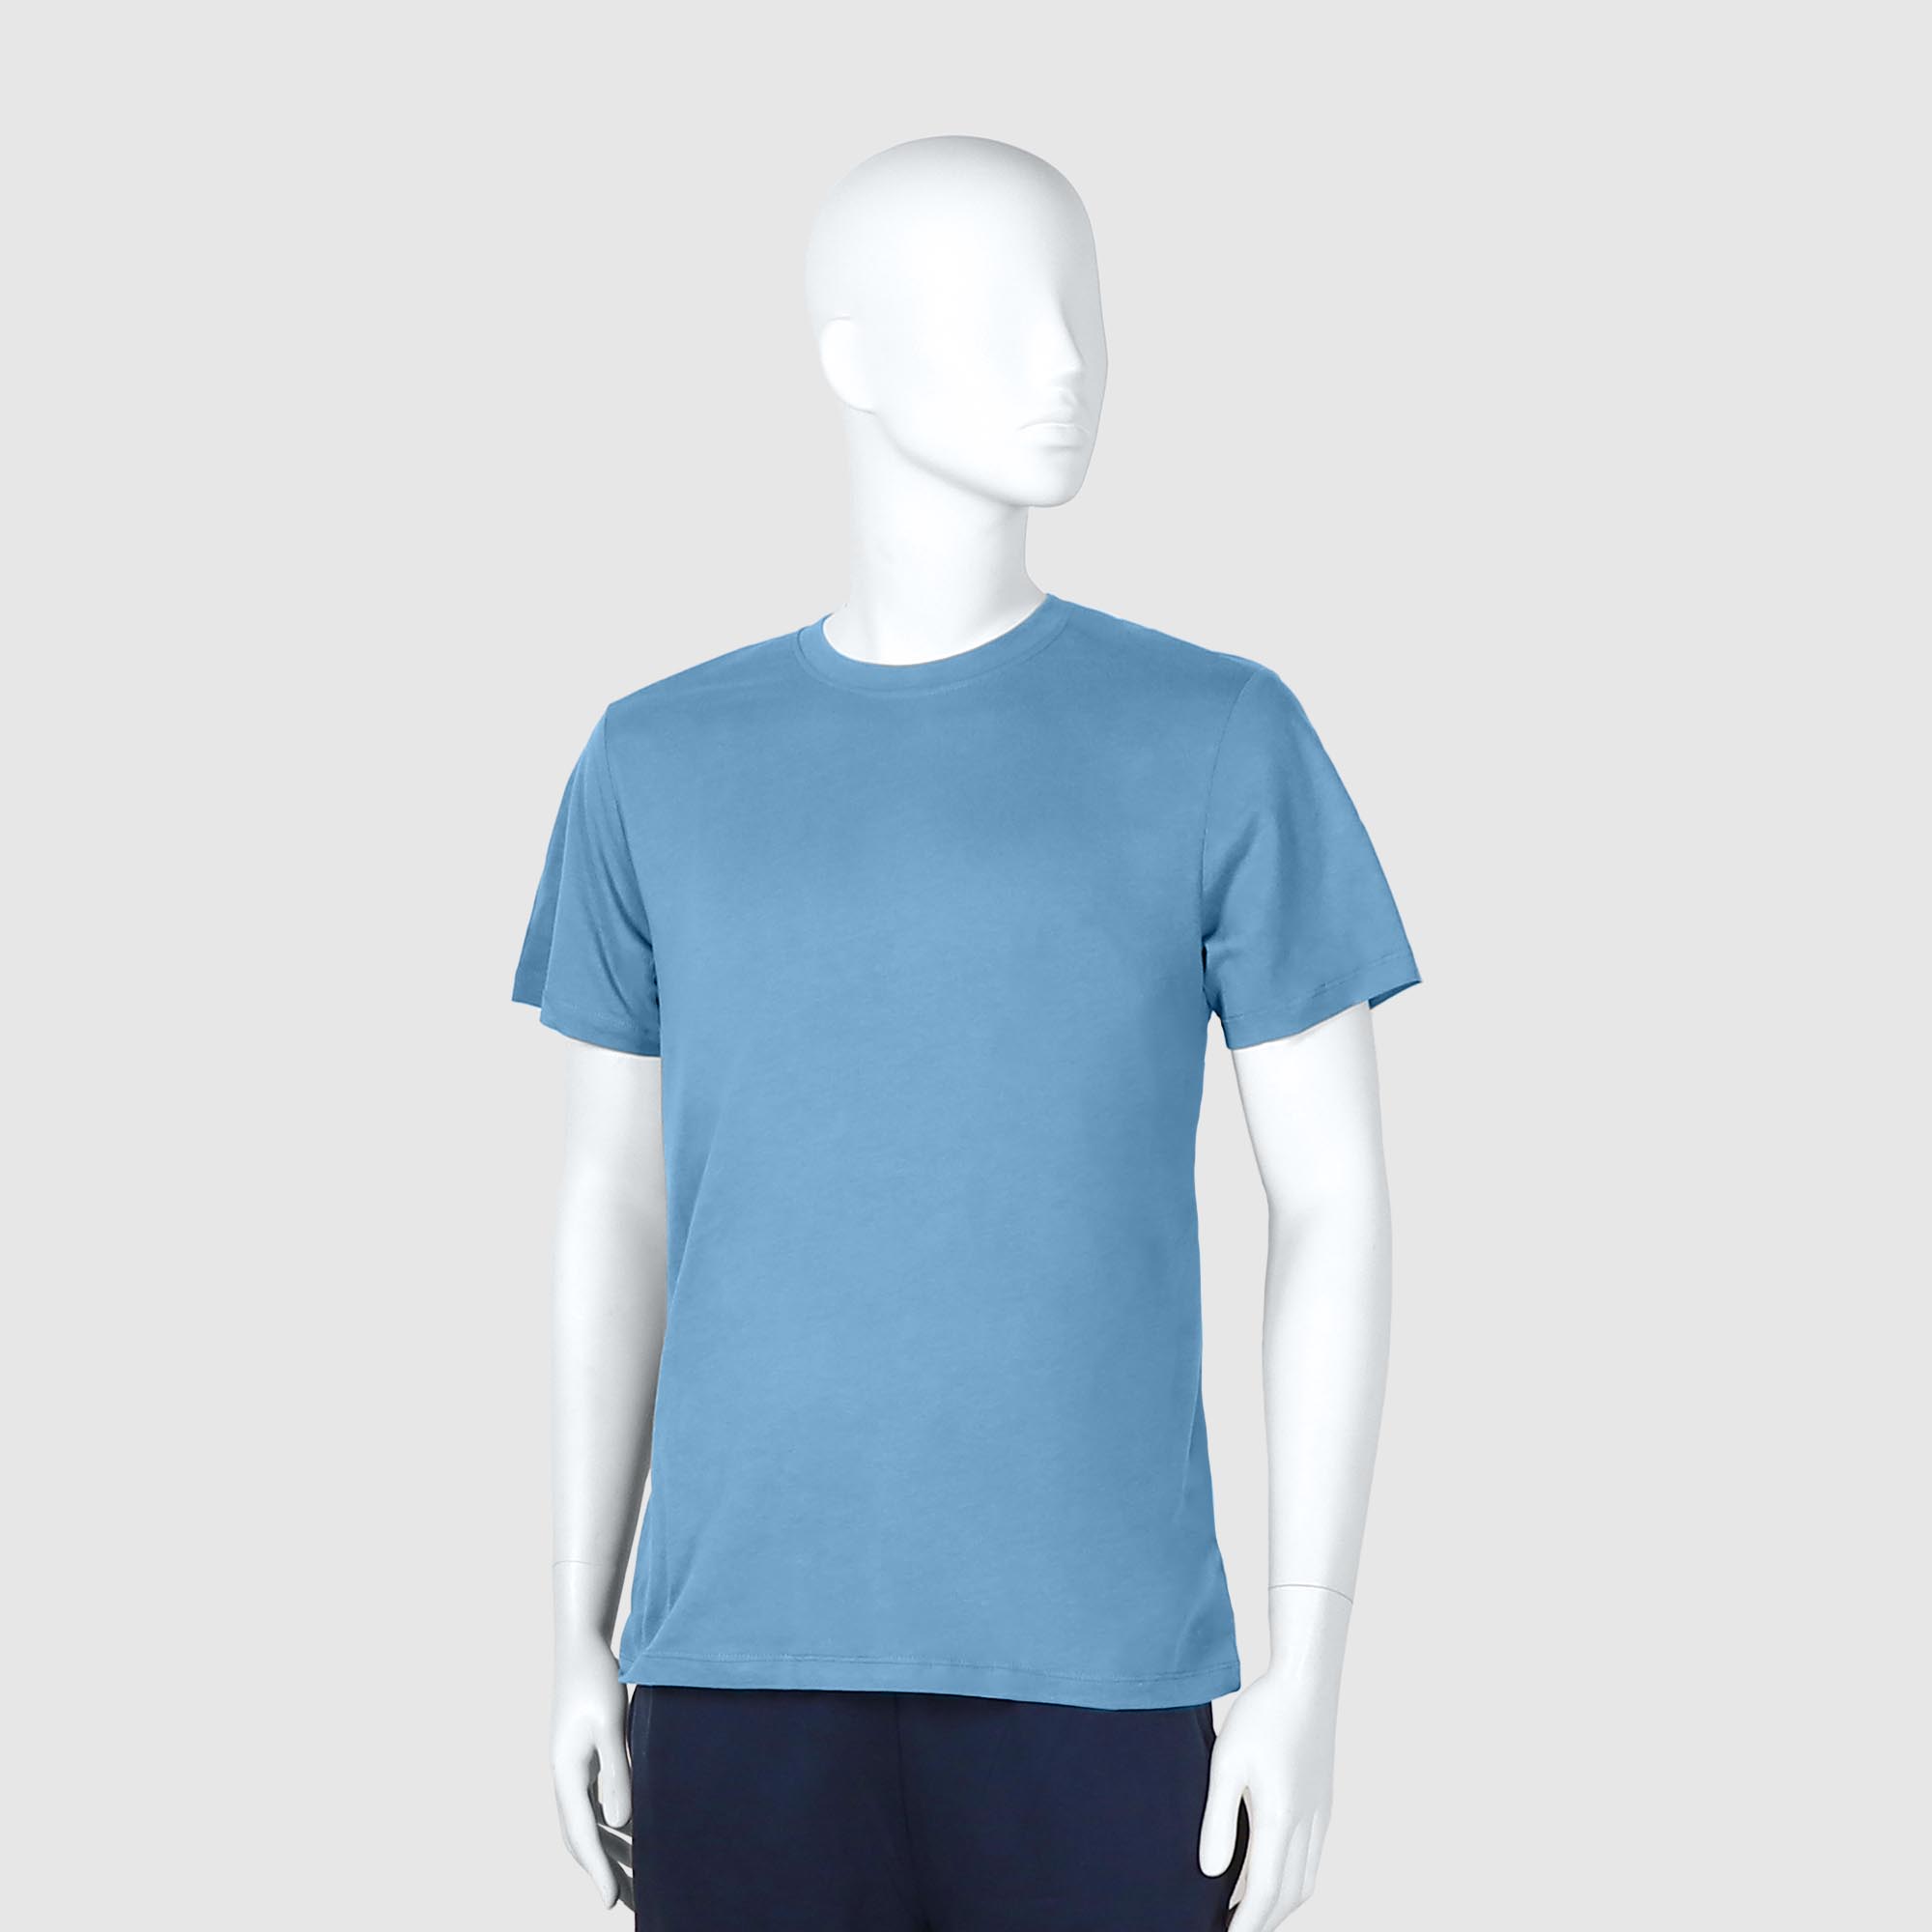 Мужская футболка Diva Teks голубая (DTD-03), цвет голубой, размер 44-46